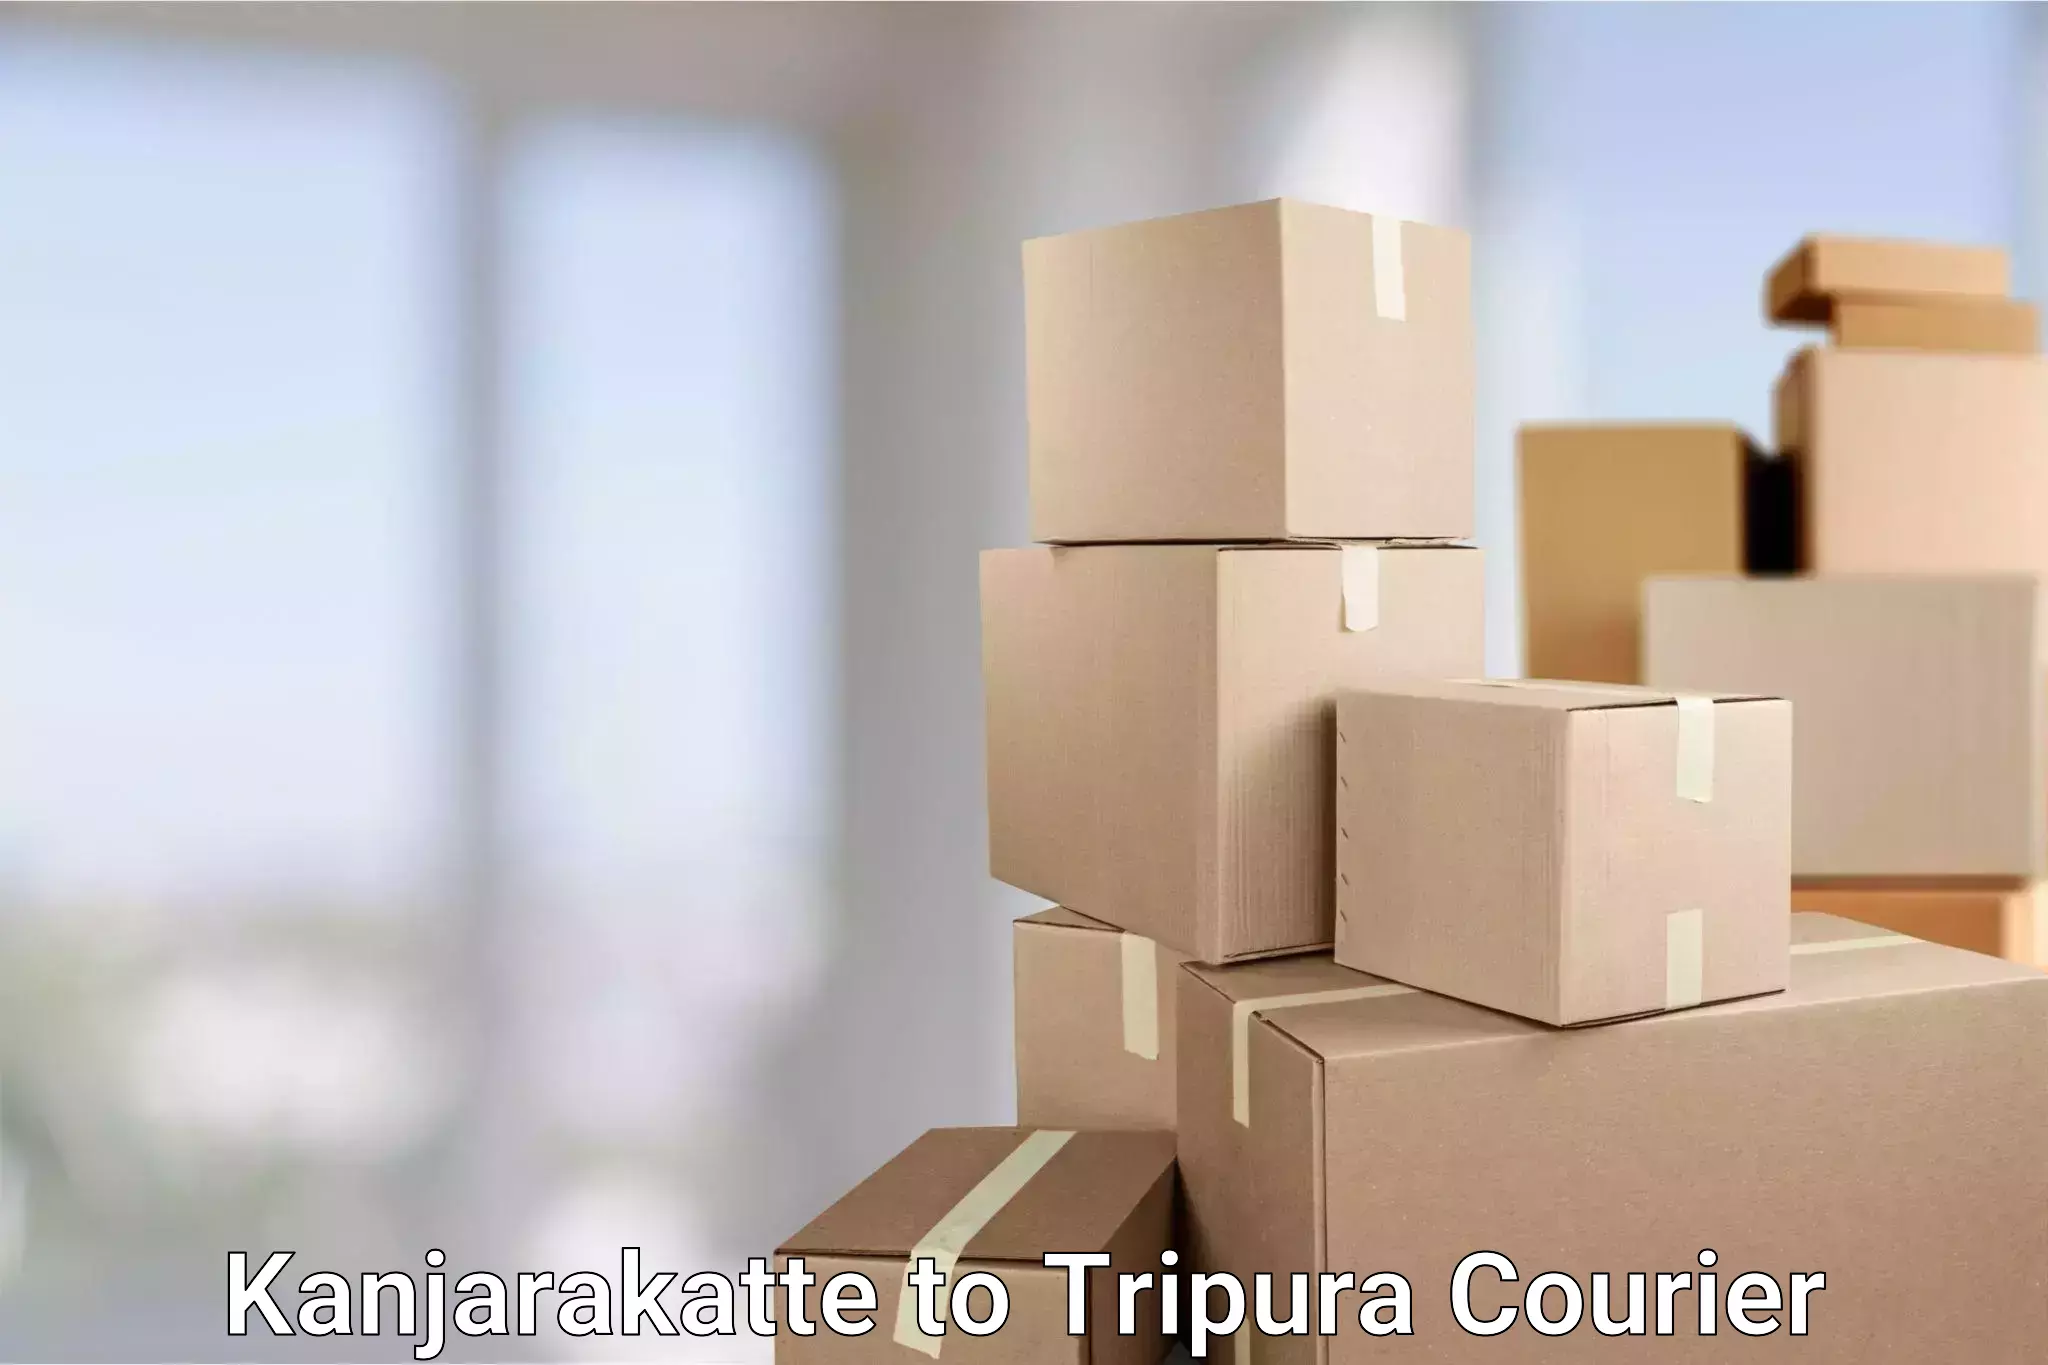 Global shipping solutions in Kanjarakatte to Tripura